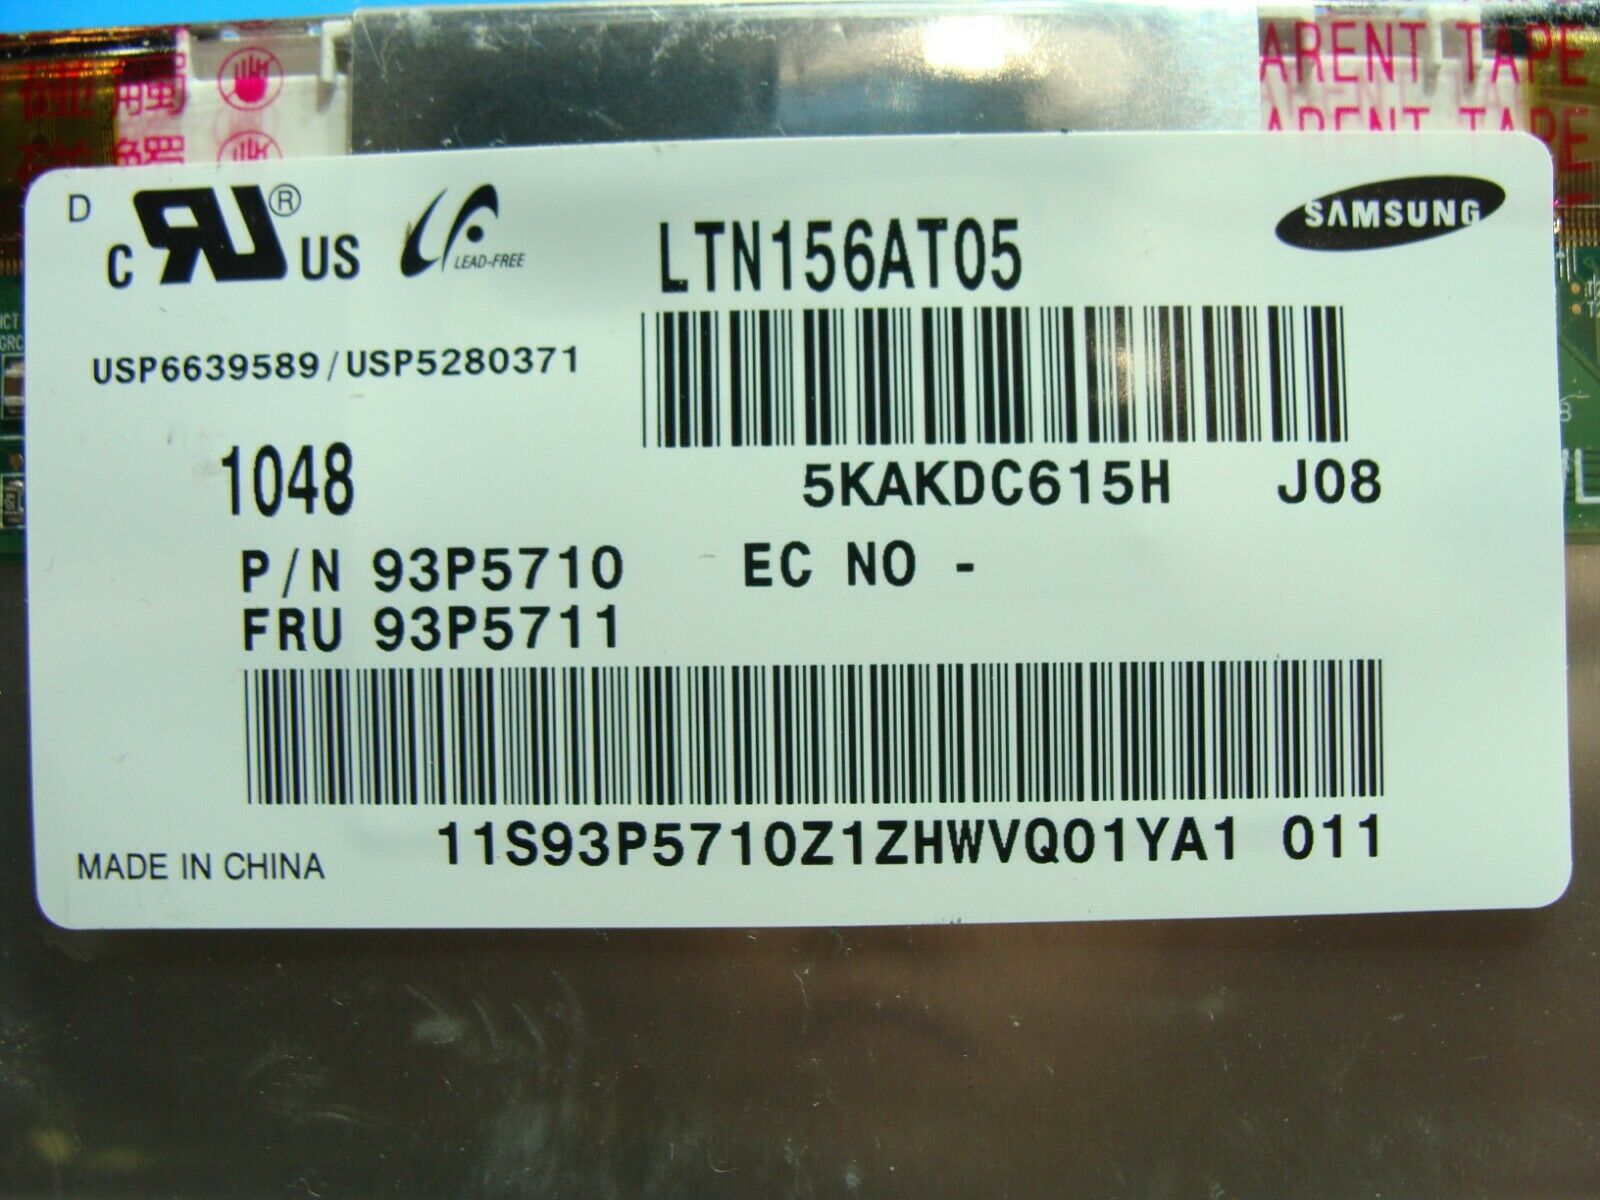 Lenovo IdeaPad Z560 0914 15.6